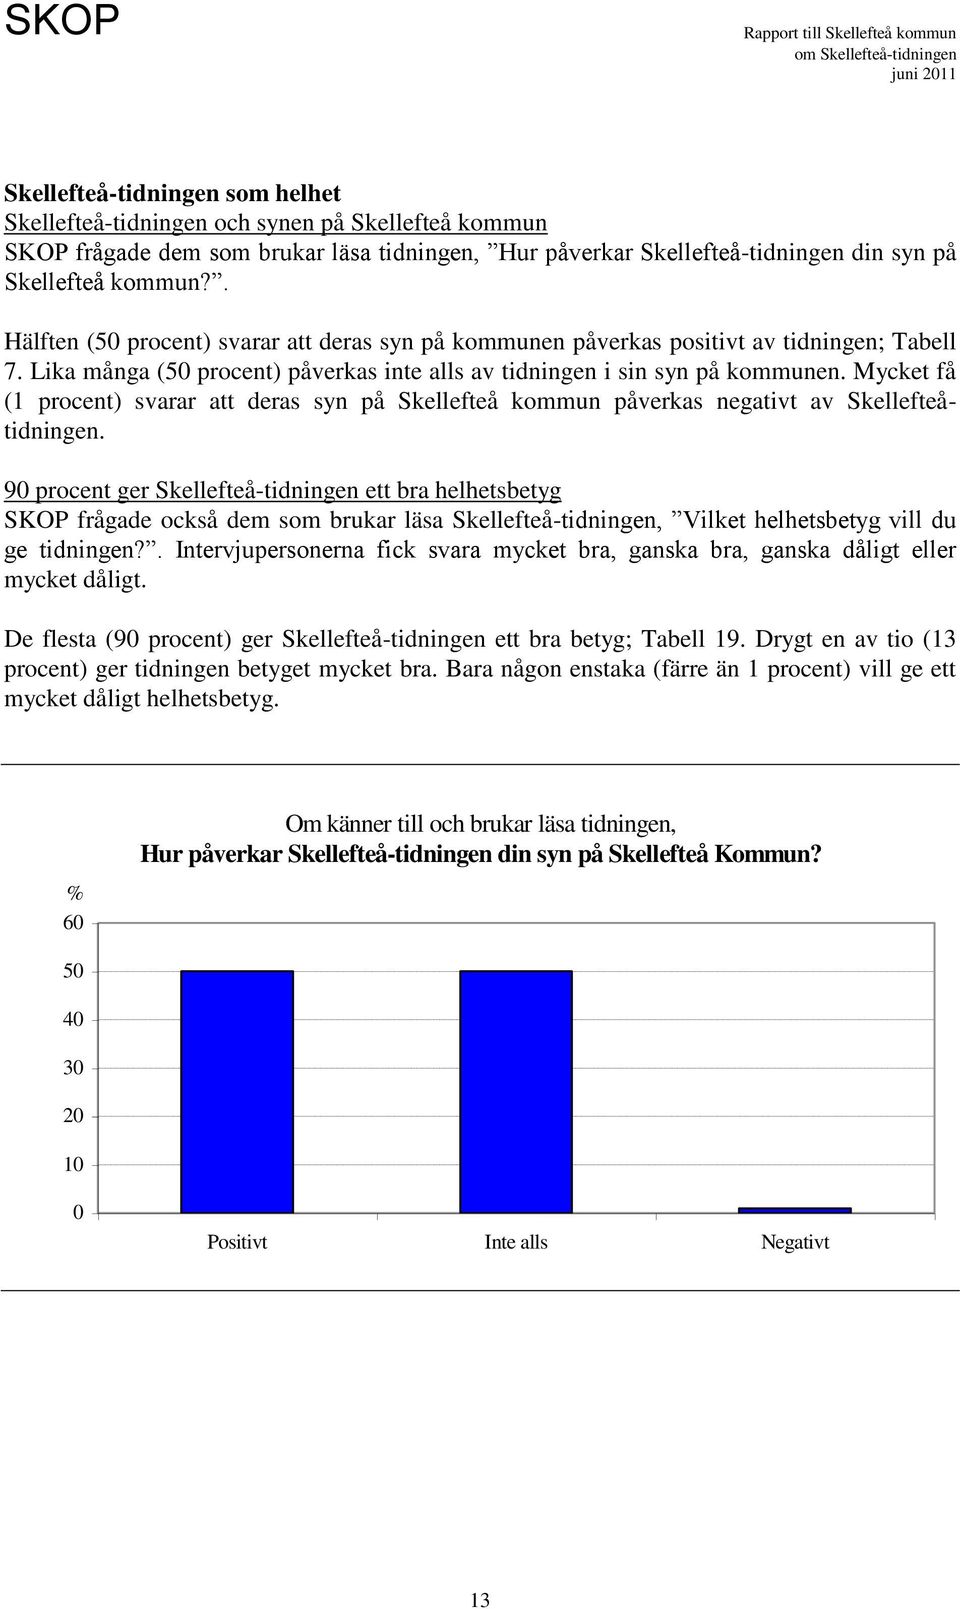 Mycket få (1 procent) svarar att deras syn på Skellefteå kommun påverkas negativt av Skellefteåtidningen.